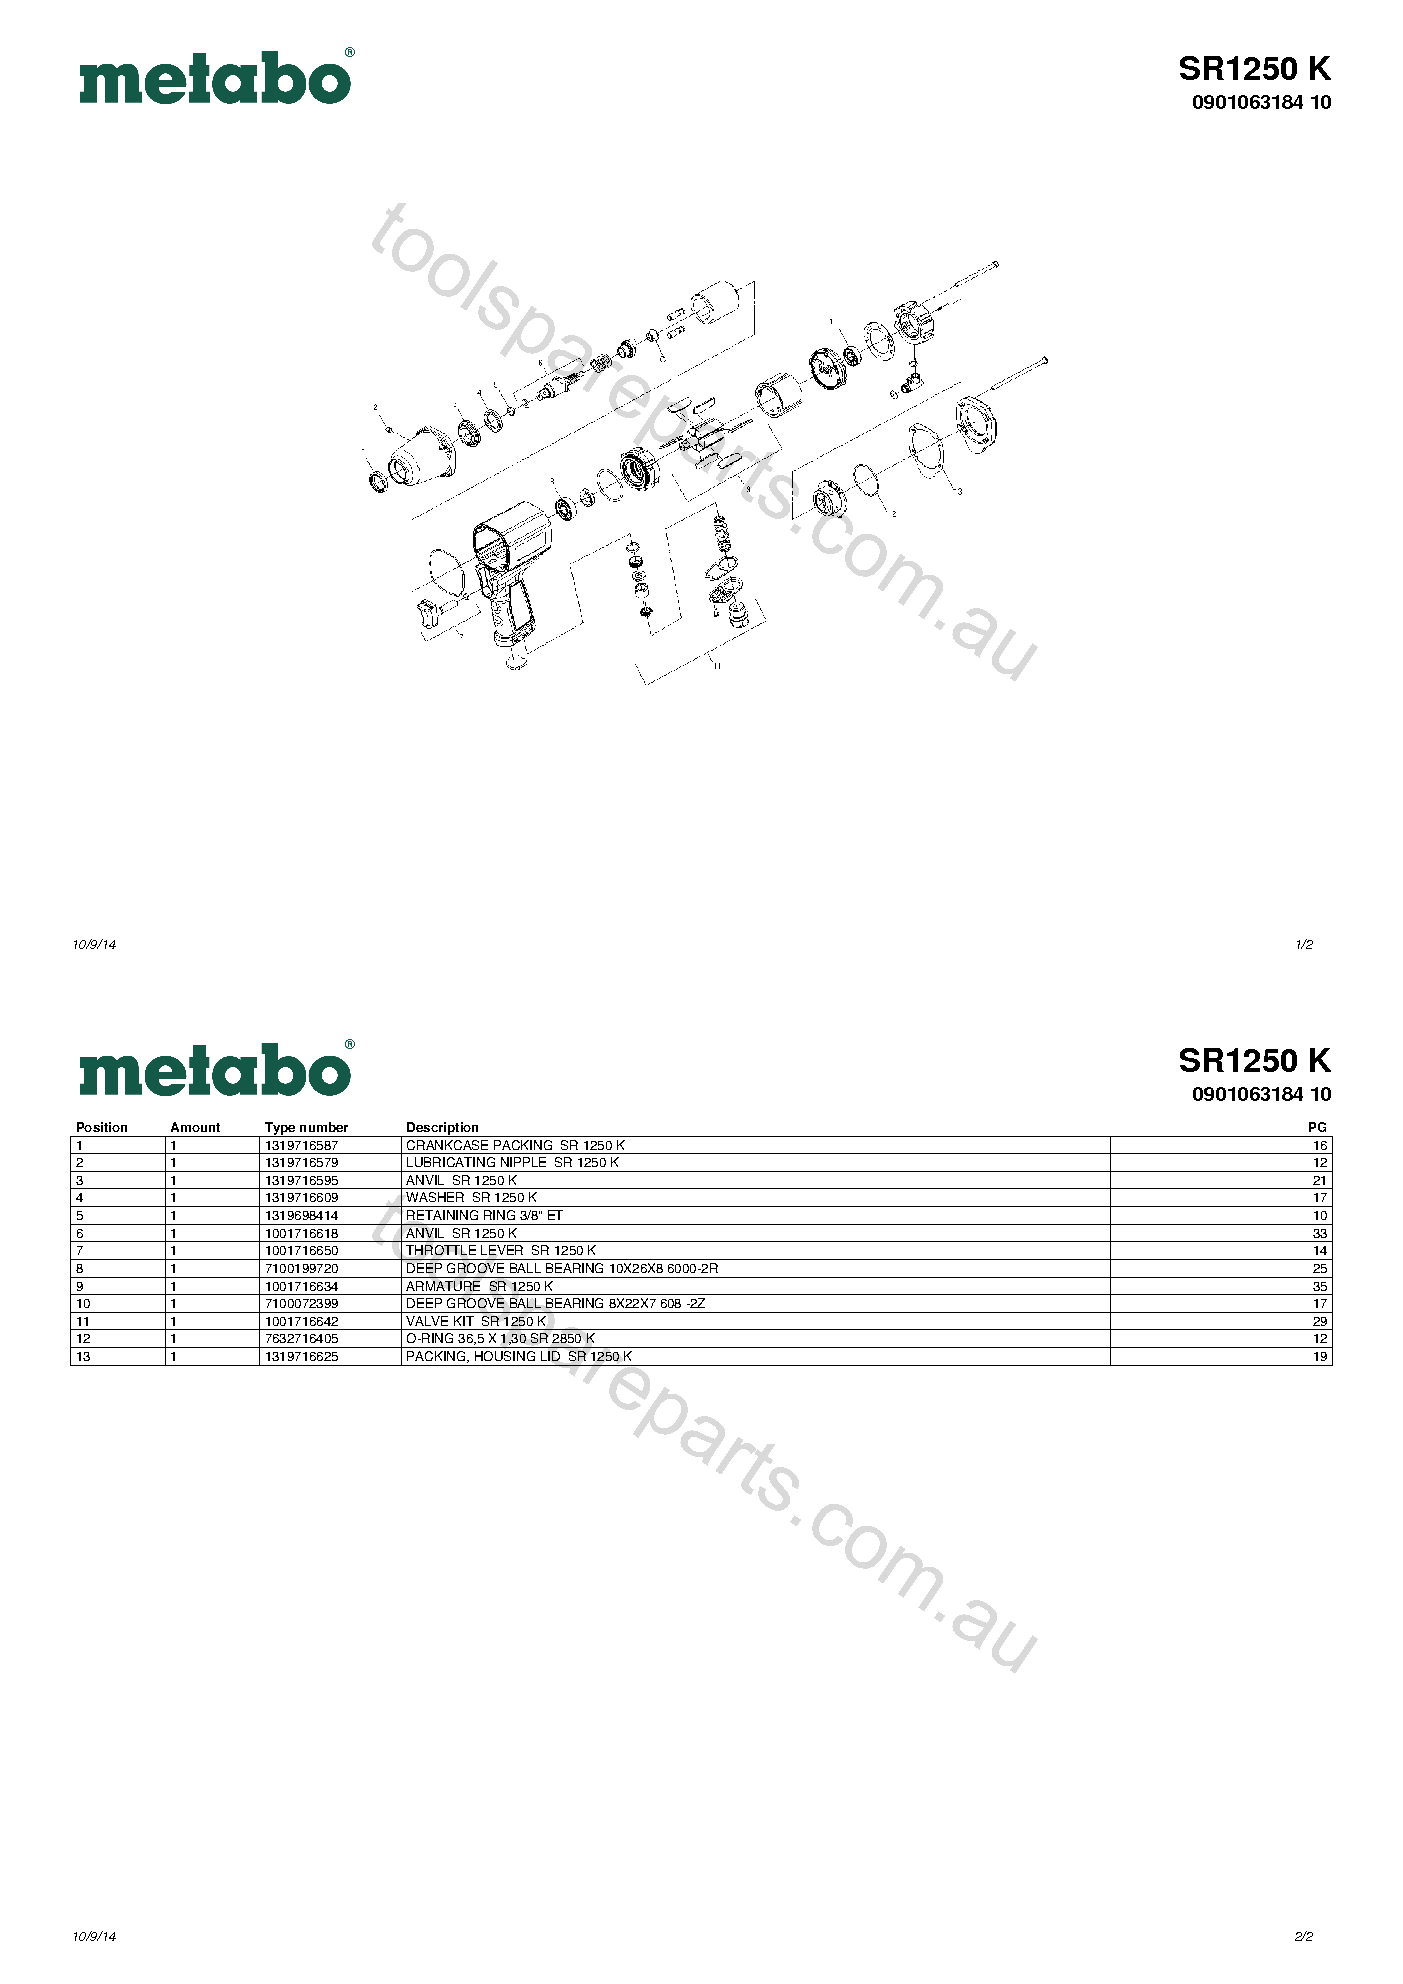 Metabo SR1250 K 0901063184 10  Diagram 1